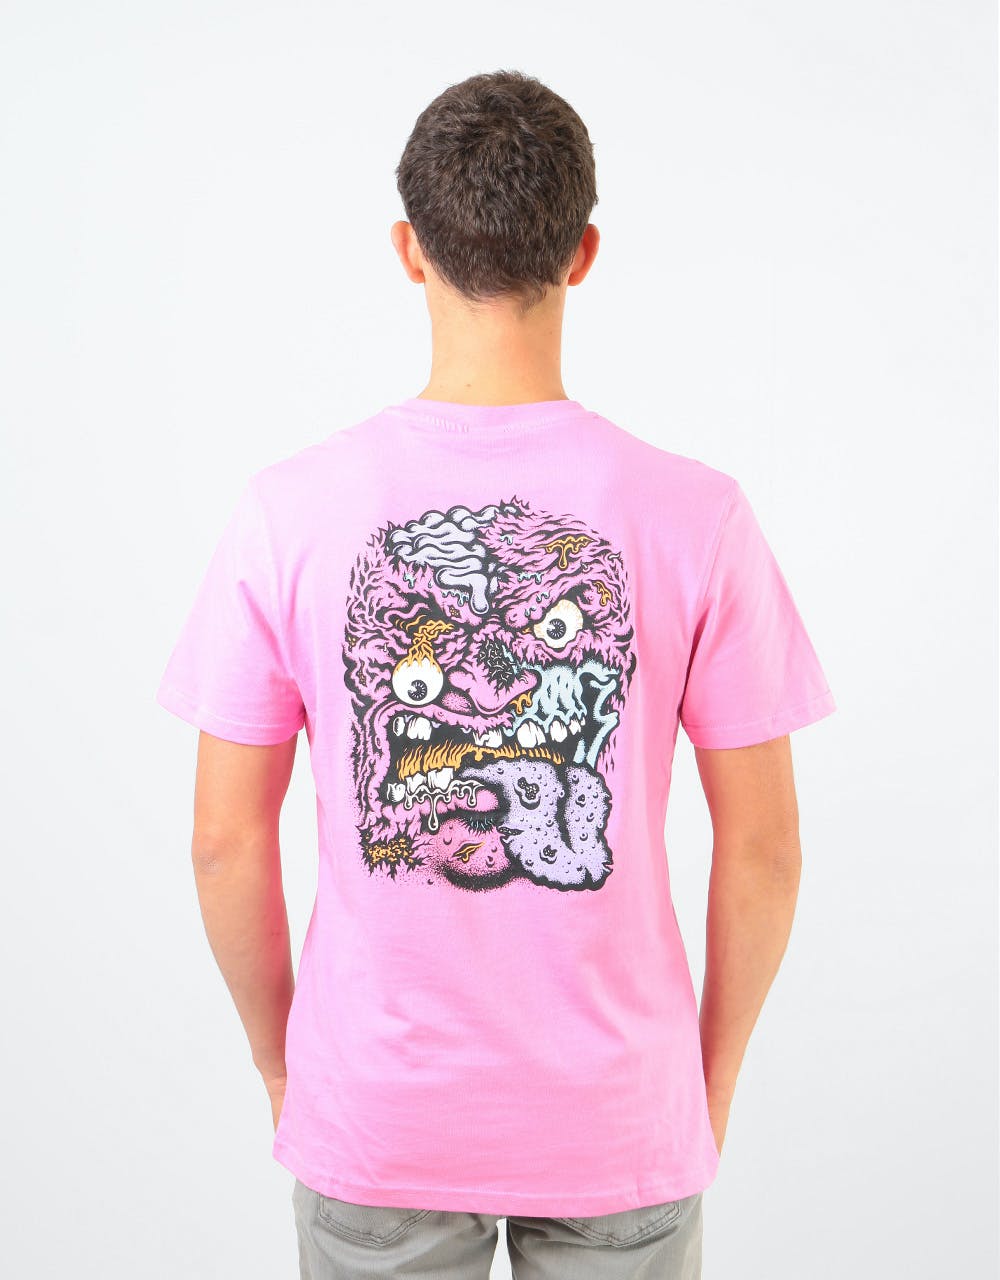 Santa Cruz Rob Face 2 T-Shirt - Orchid Pink